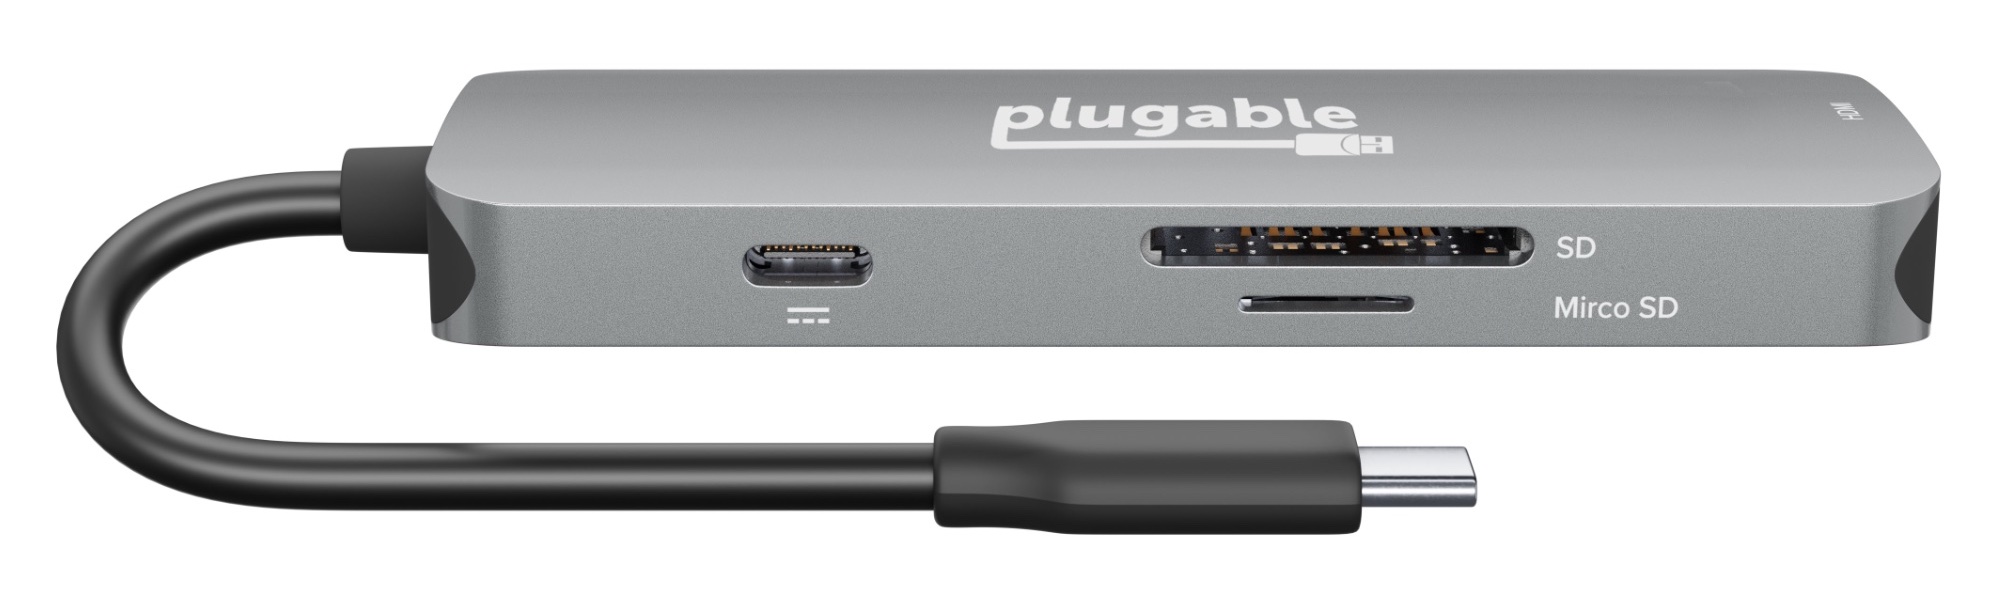 Plugable USB-C Hub 